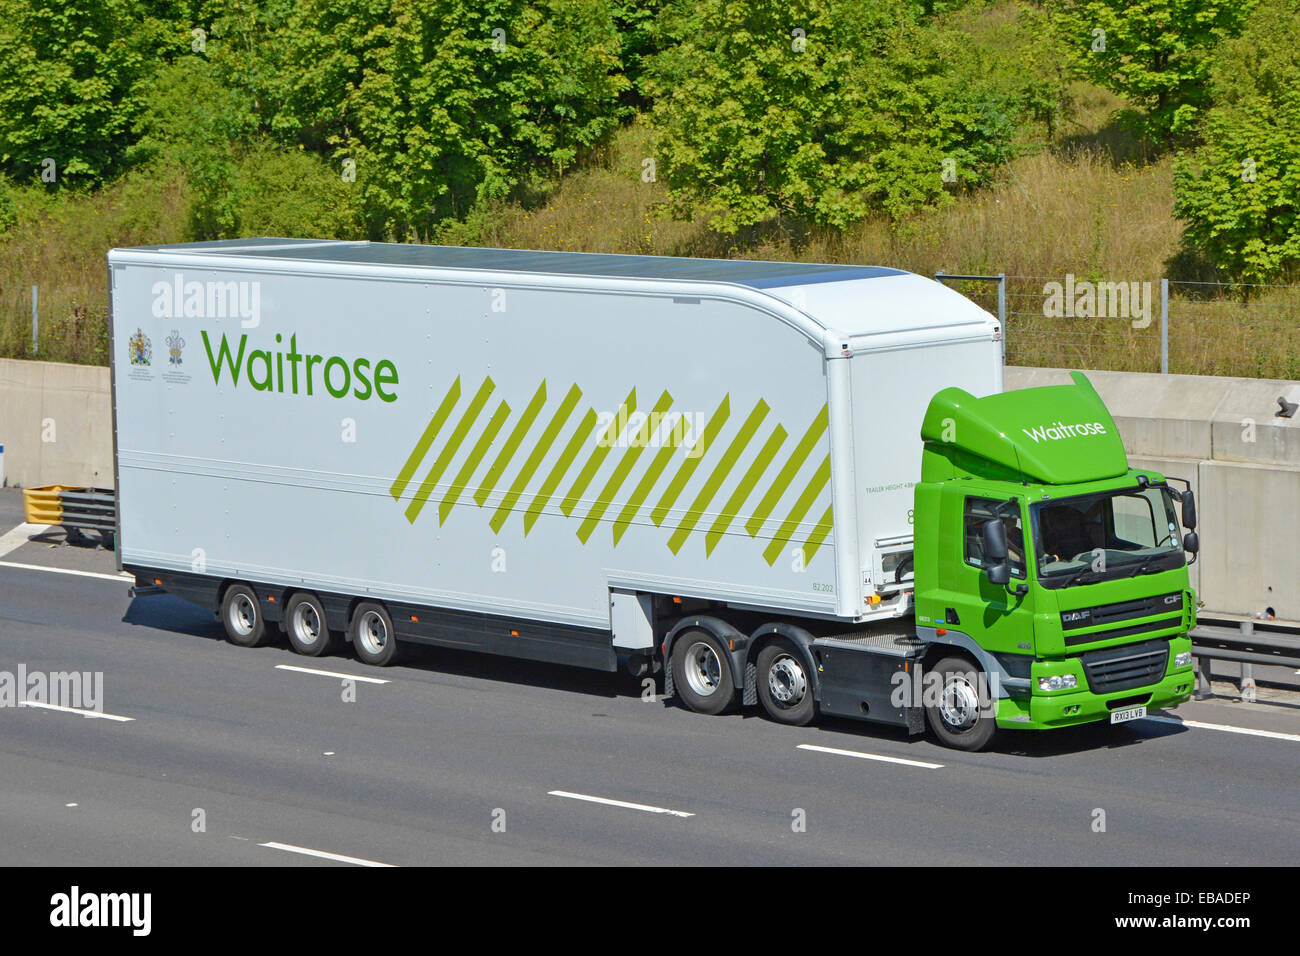 Vue latérale et avant du supermarché Waitrose entreprise chaîne d'approvisionnement alimentaire verte livraison magasin camion et logo de remorque de conducteur et Royal Adjudant England UK Banque D'Images